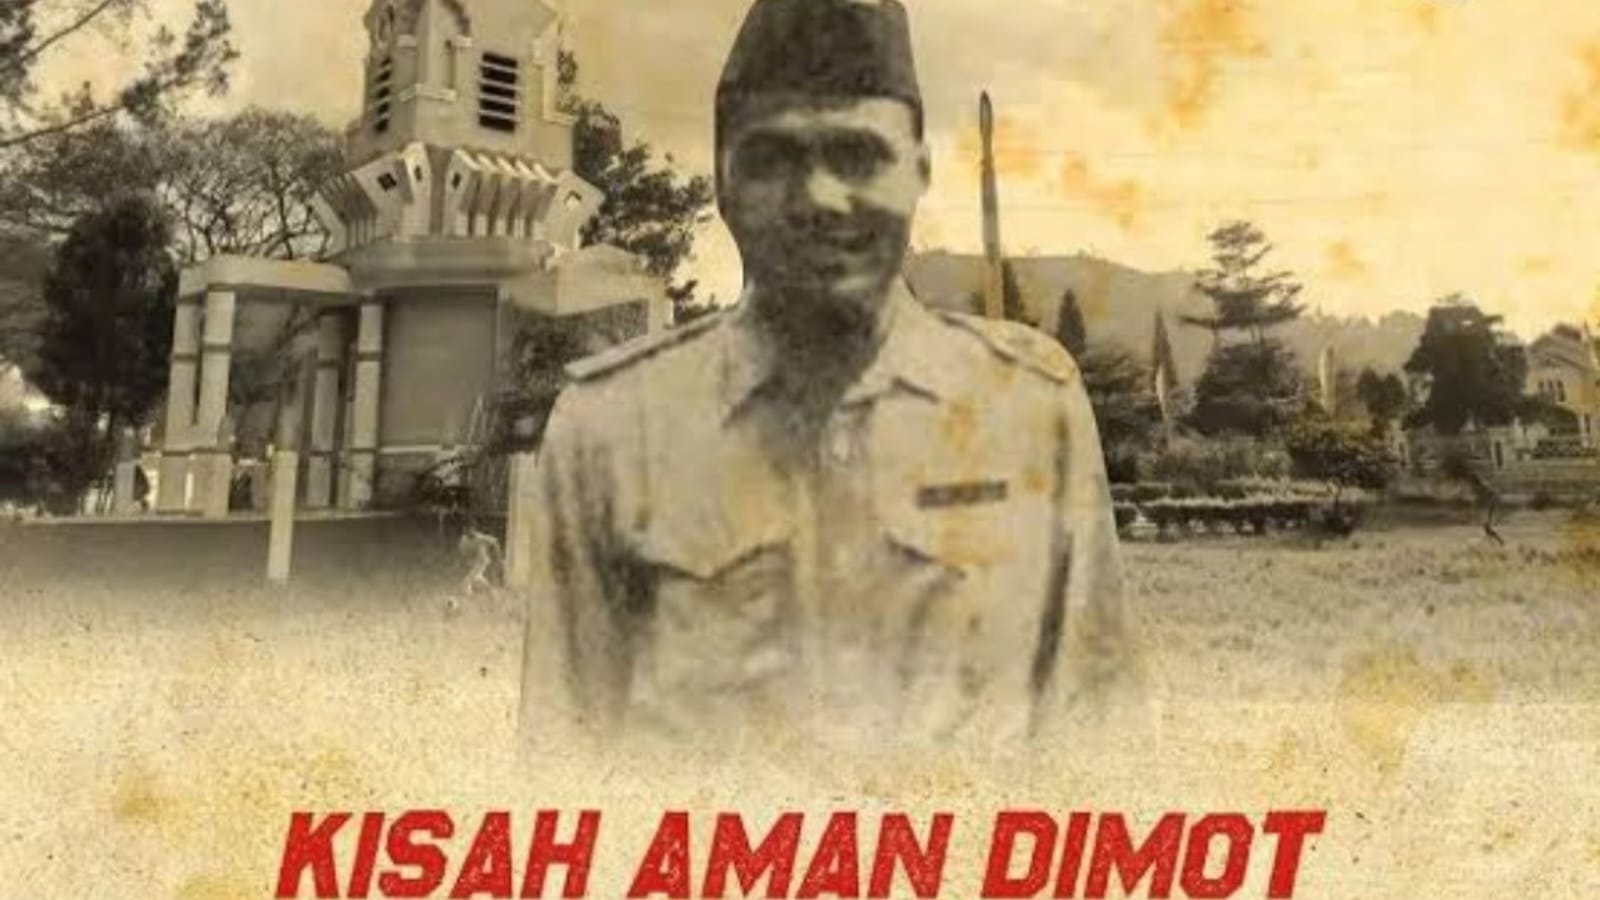 5 Pejuang Indonesia Terkenal Kebal Peluru, Kolonel Aman Dimot